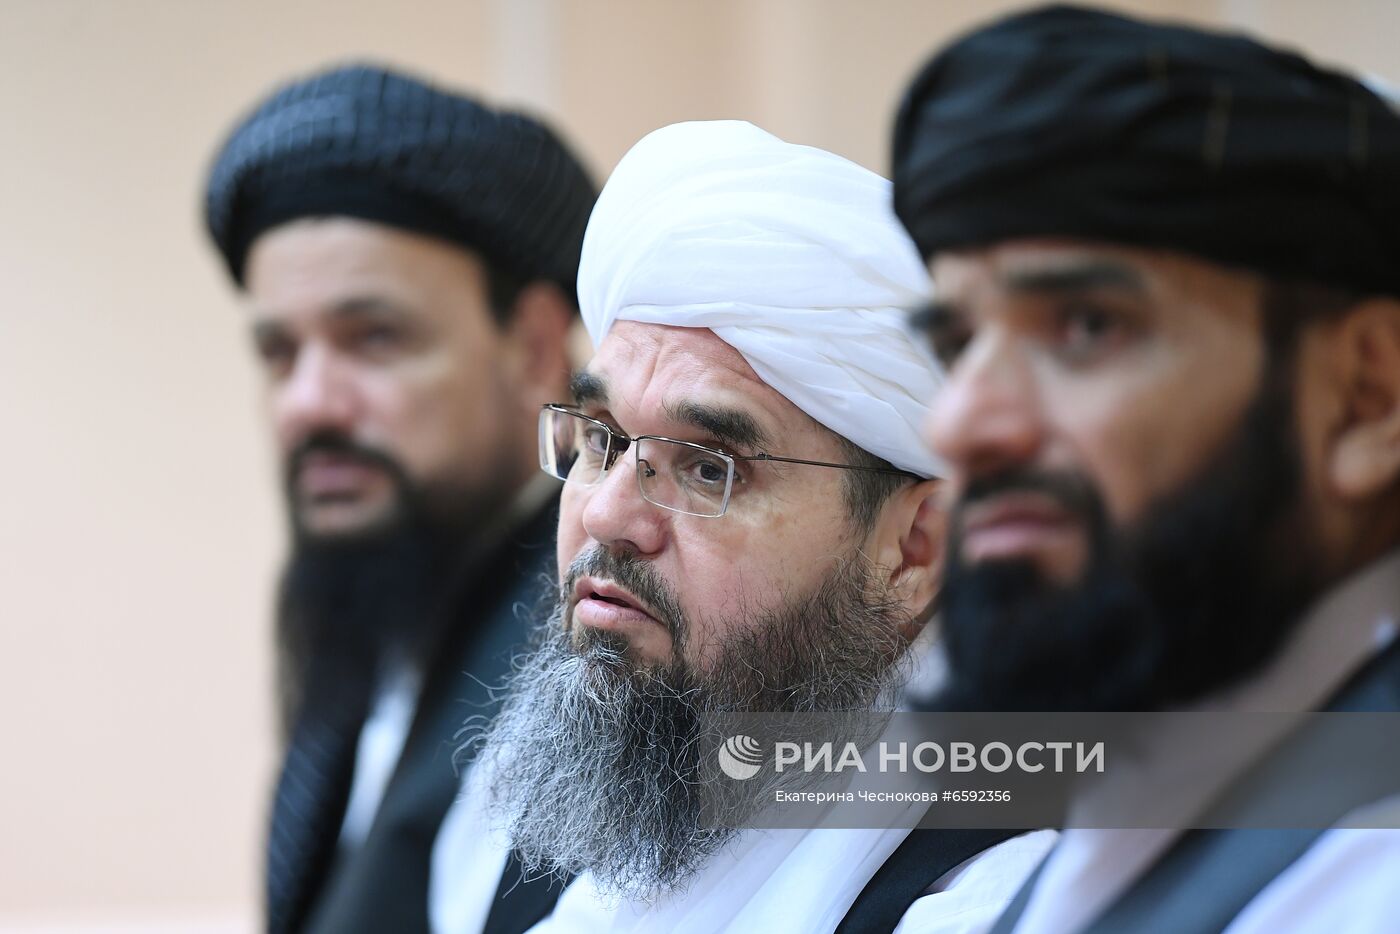 П/к делегации политического офиса движения "Талибан" (запрещено в РФ) в Москве